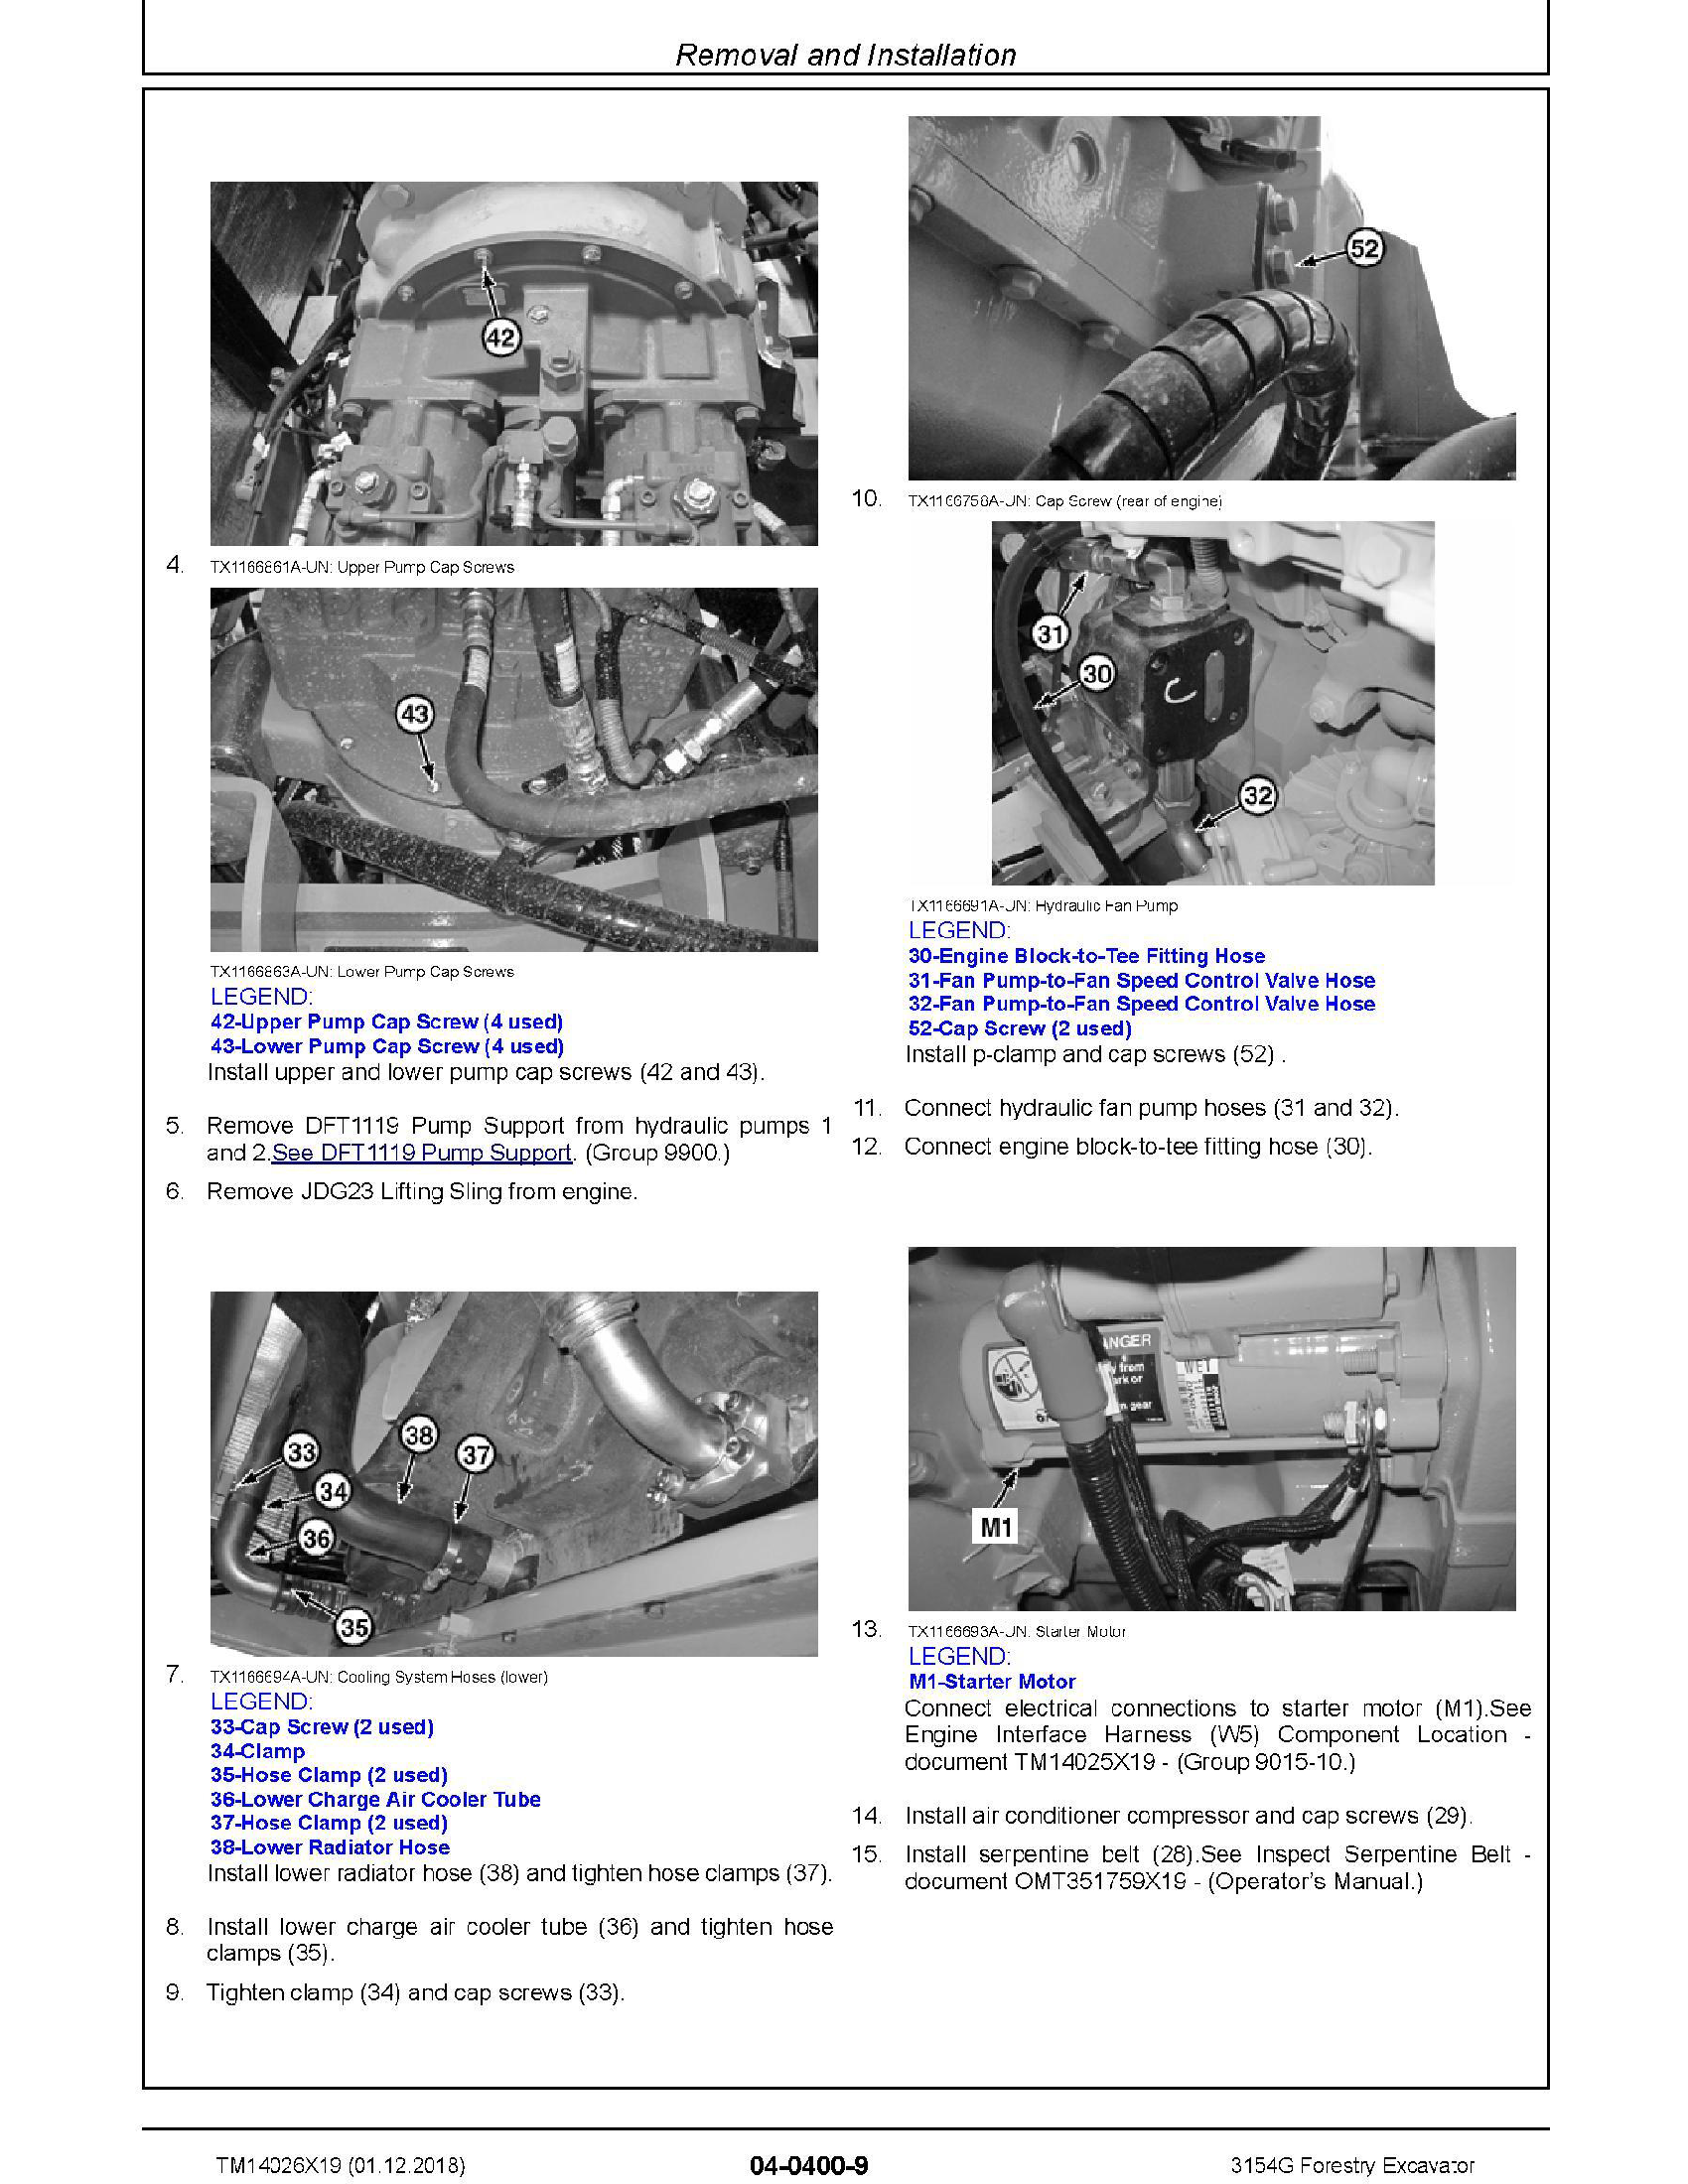 John Deere 5060E manual pdf